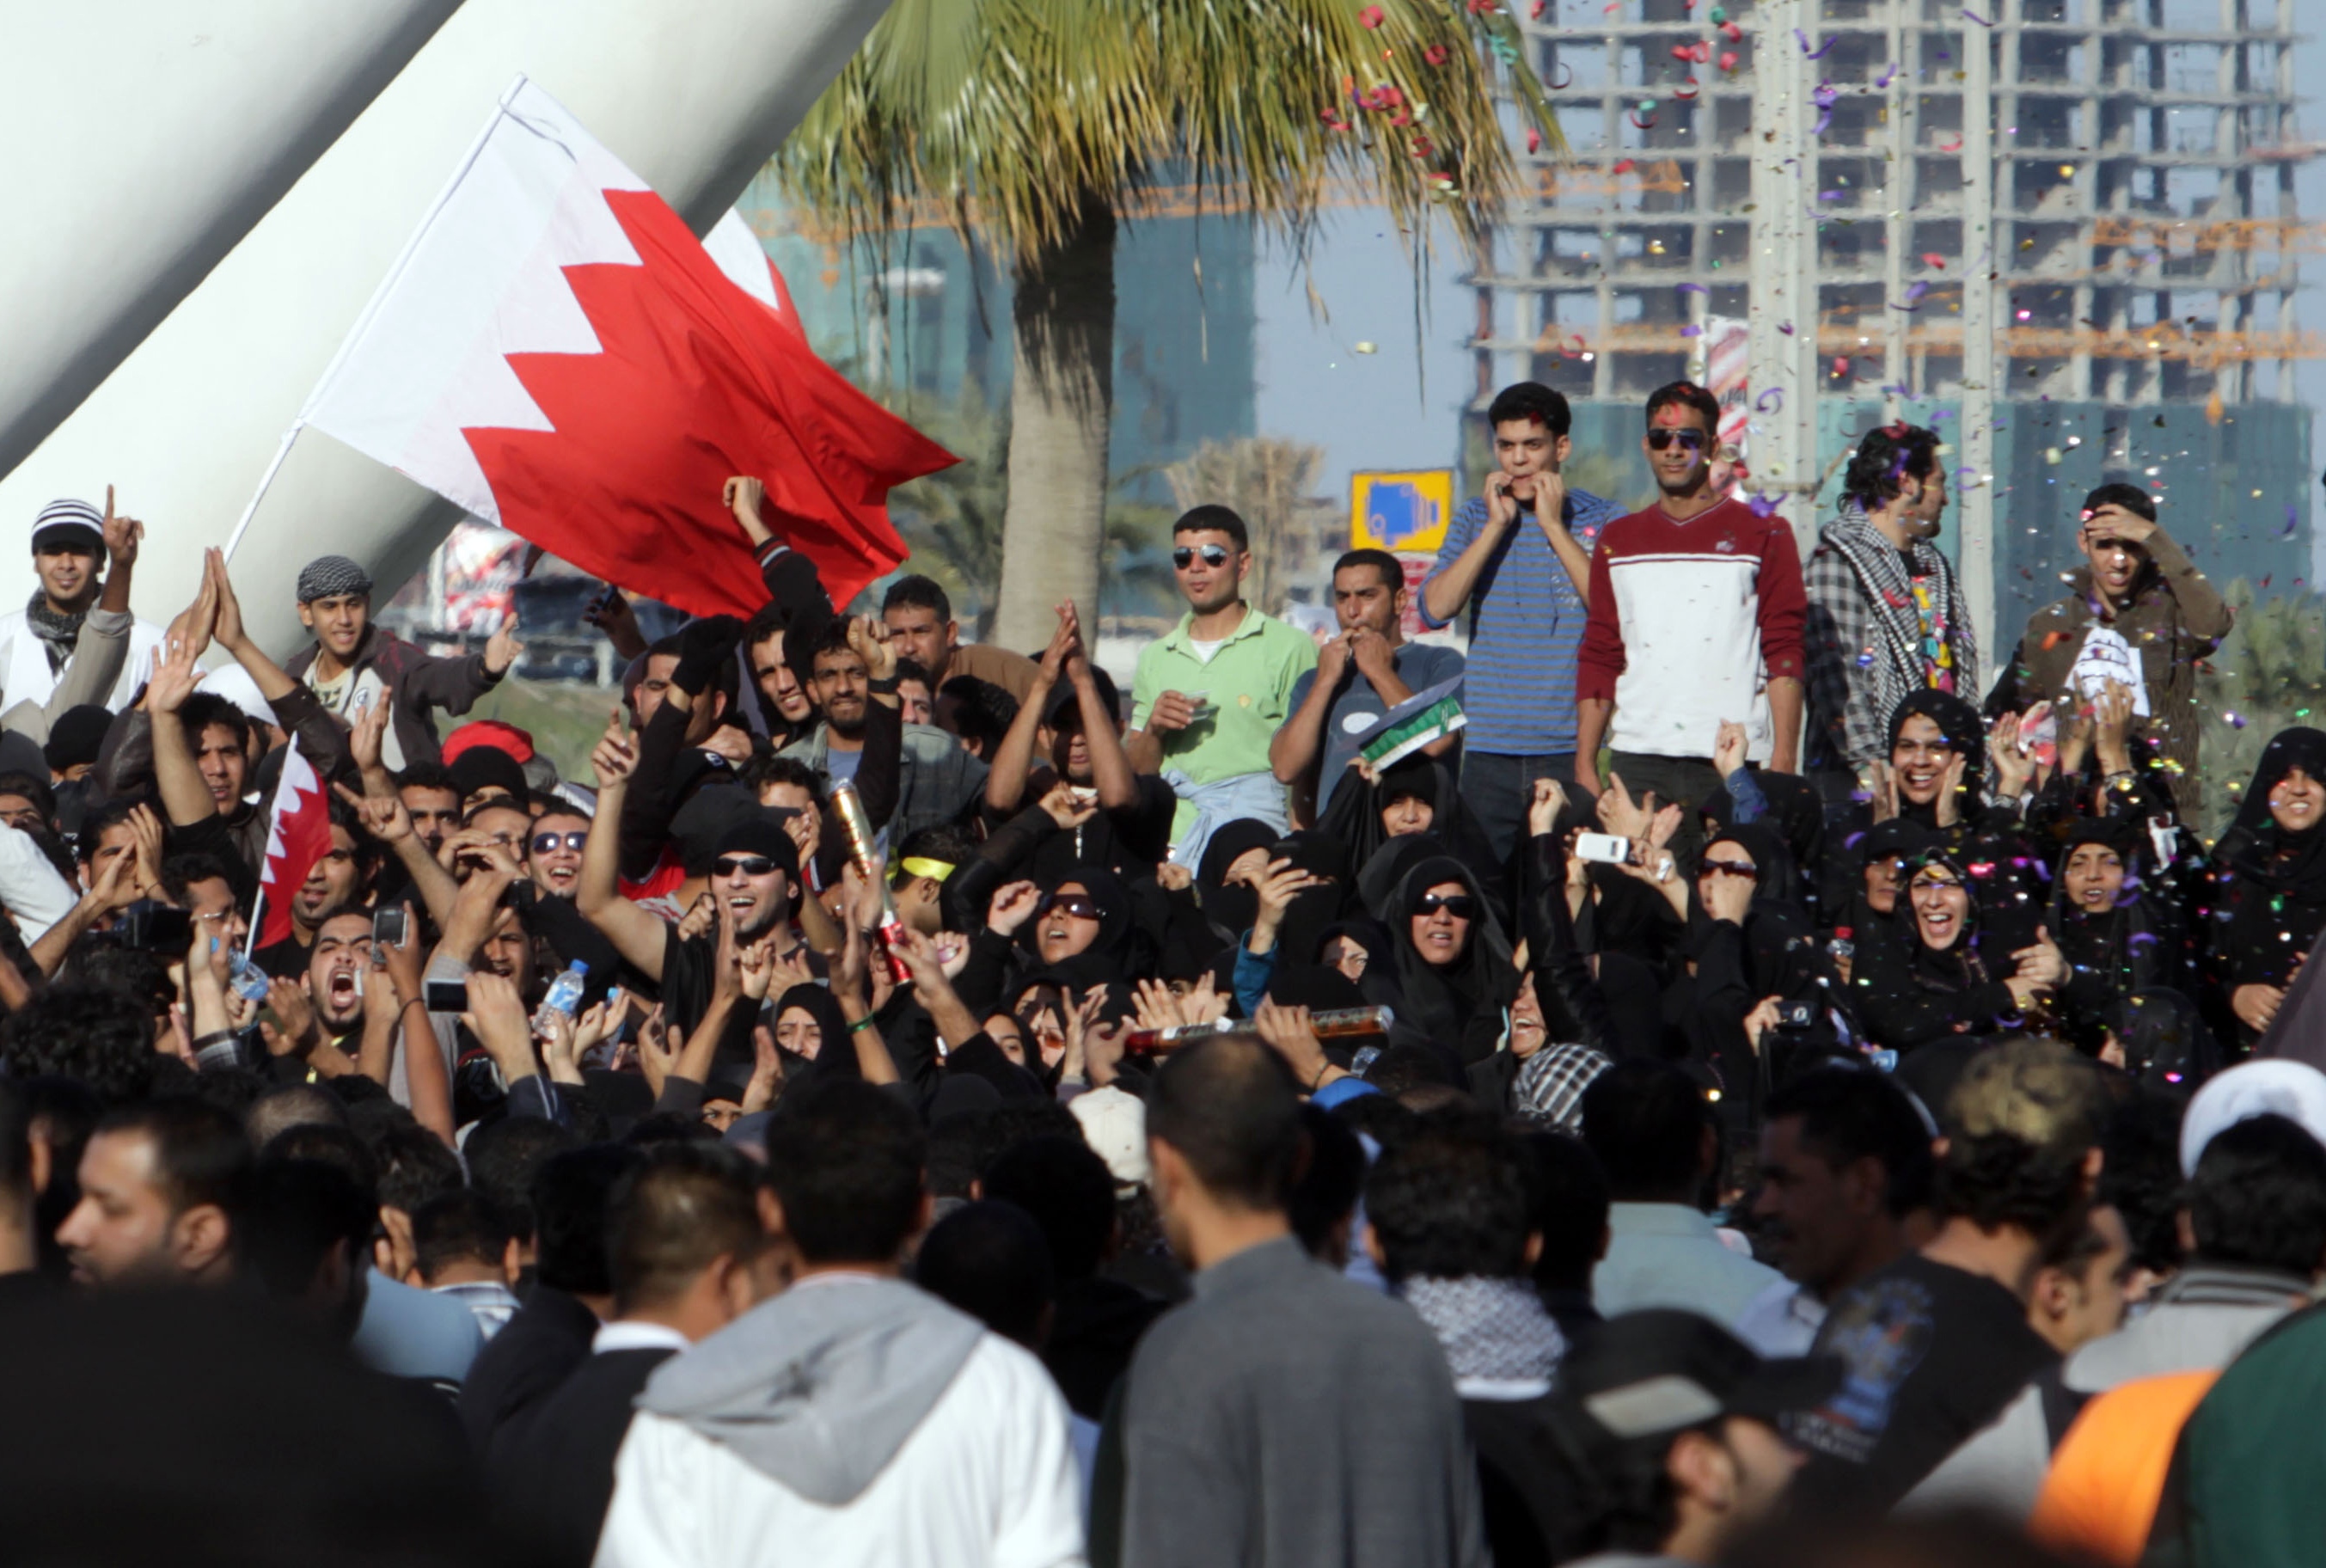 Demokrati, Politik, Brott och straff, Protester, Bahrain, Revolution, Demonstration, Uppror